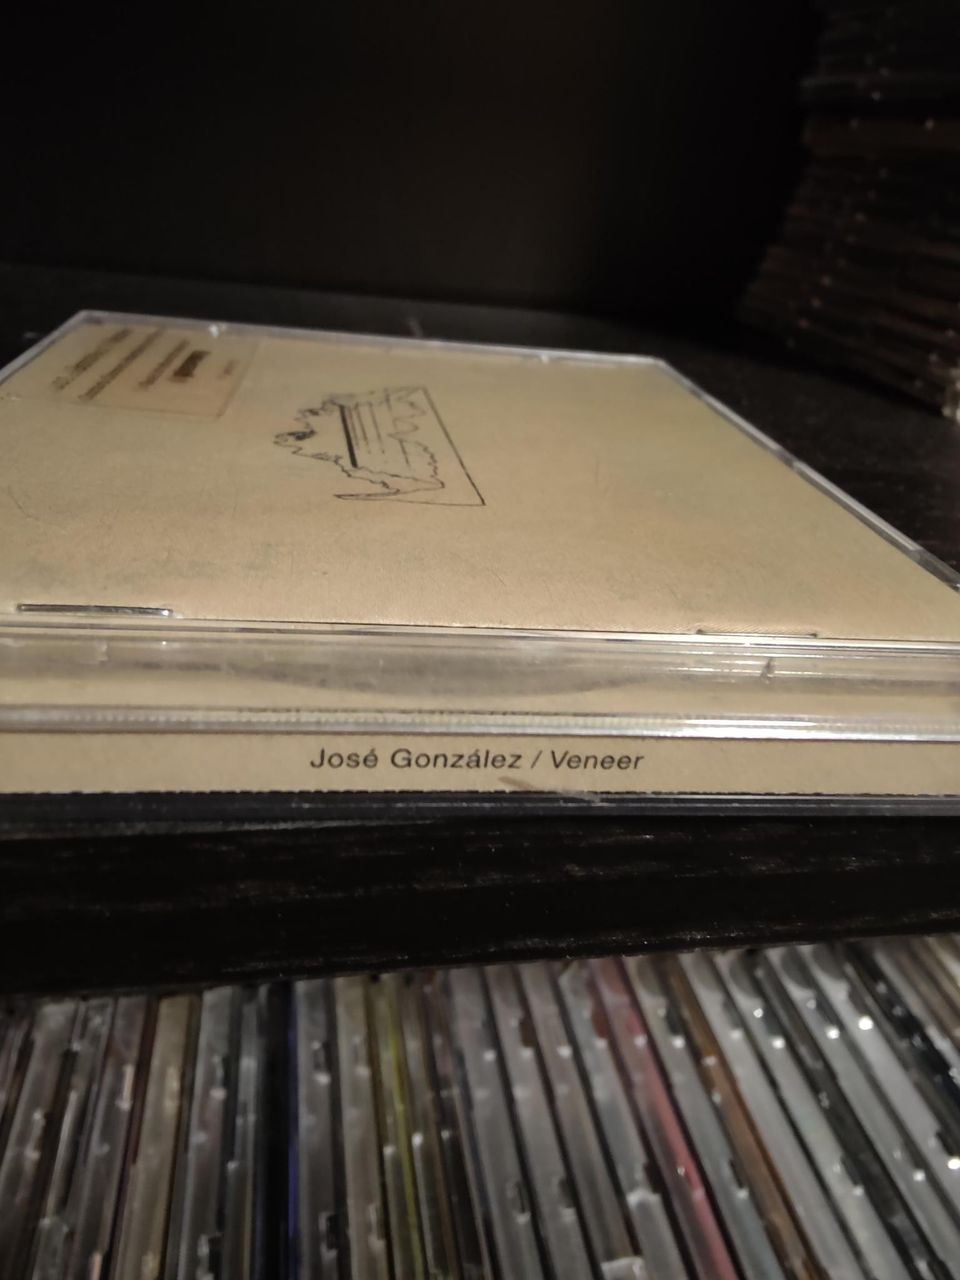 Jose Gonzalez veneer albumi